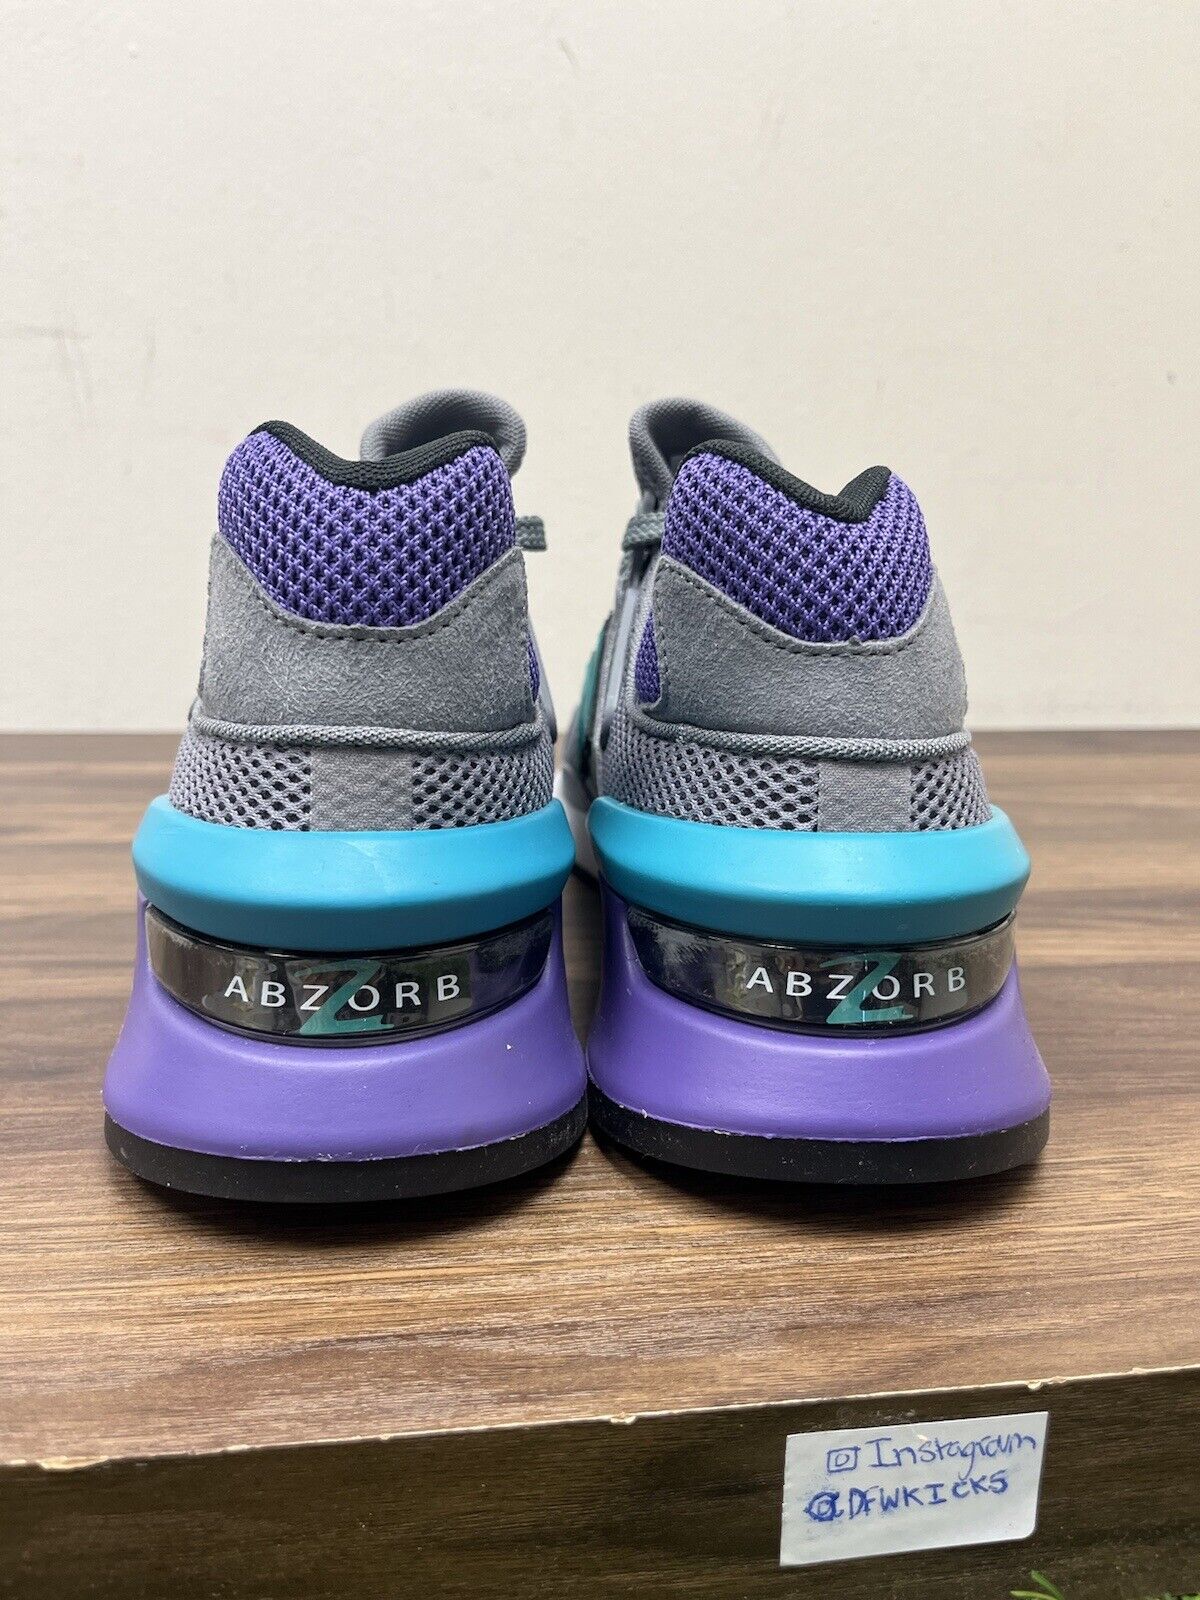 Size 10.5 - New Balance 997 Gray Purple - MS997JKC